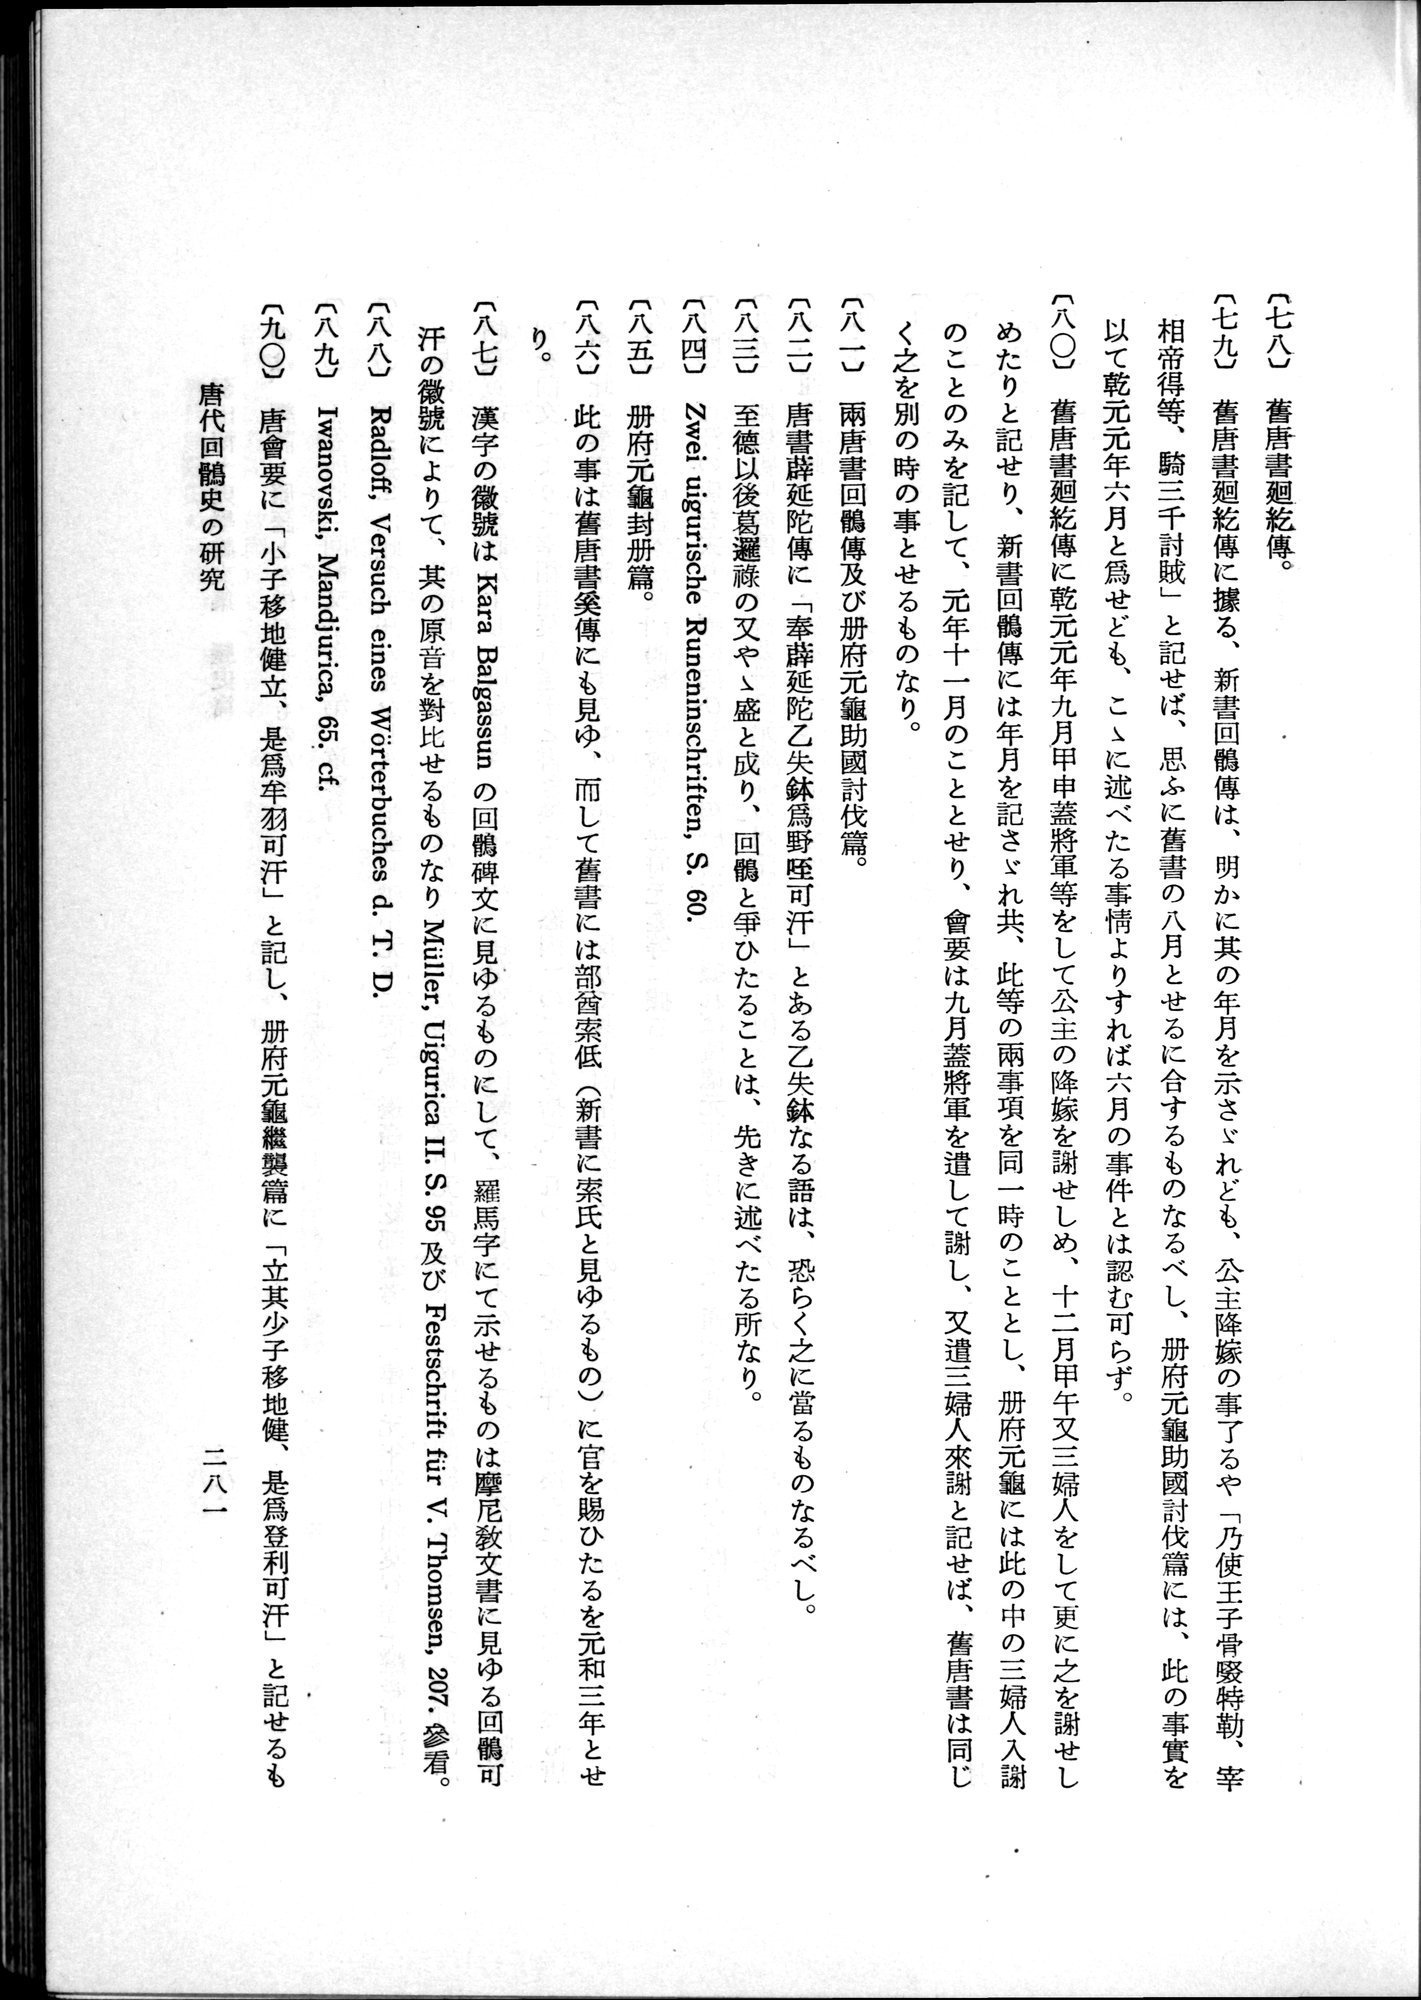 羽田博士史学論文集 : vol.1 / Page 319 (Grayscale High Resolution Image)